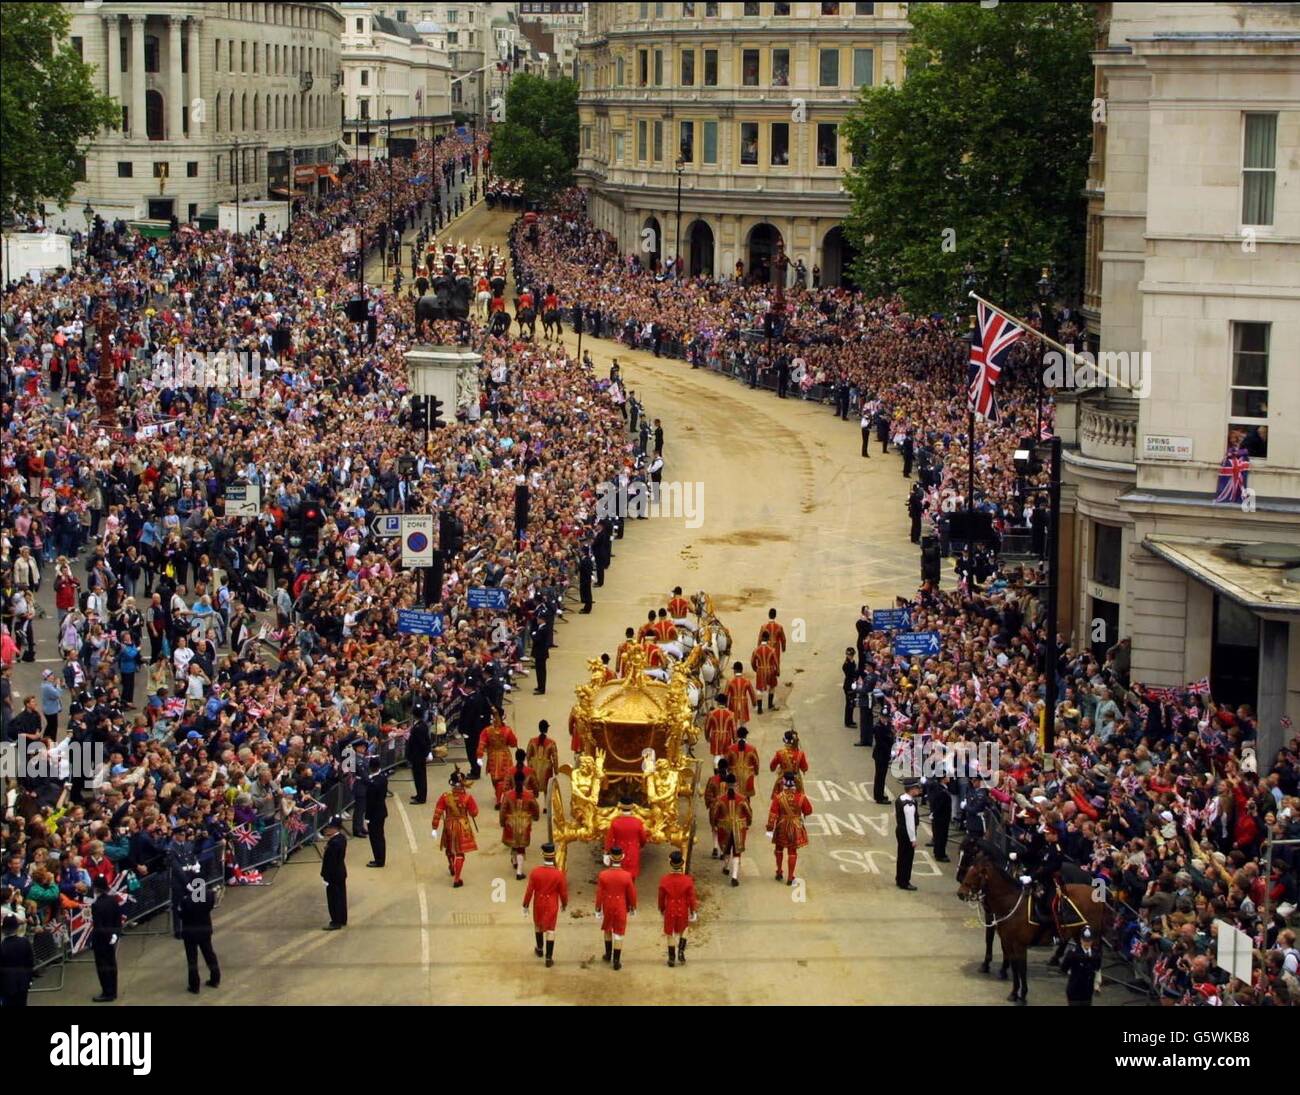 Die britische Königin Elizabeth II fährt am Dienstag, den 4. Juni 2002, im Gold State-Bus vom Buckingham Palace zur St. Paul's Cathedral, zu einem Erntedankfest-Gottesdienst zur Feier ihres Goldenen Jubiläums. * der Wagen wurde 1762 für König Georg III. Gebaut und wurde von der Königin nur zweimal benutzt - für ihre Krönung und ihr Silbernes Jubiläum. Später, nach dem Mittagessen in Guildhall in der City of London, wird sie eine Parade und einen Karneval entlang der Mall beobachten. Am Montagabend versammelten sich mehr als eine Million Menschen im Zentrum von London, um das Konzert der Party im Palast zu hören und ein spektakuläres Feuerwerk zu sehen Stockfoto